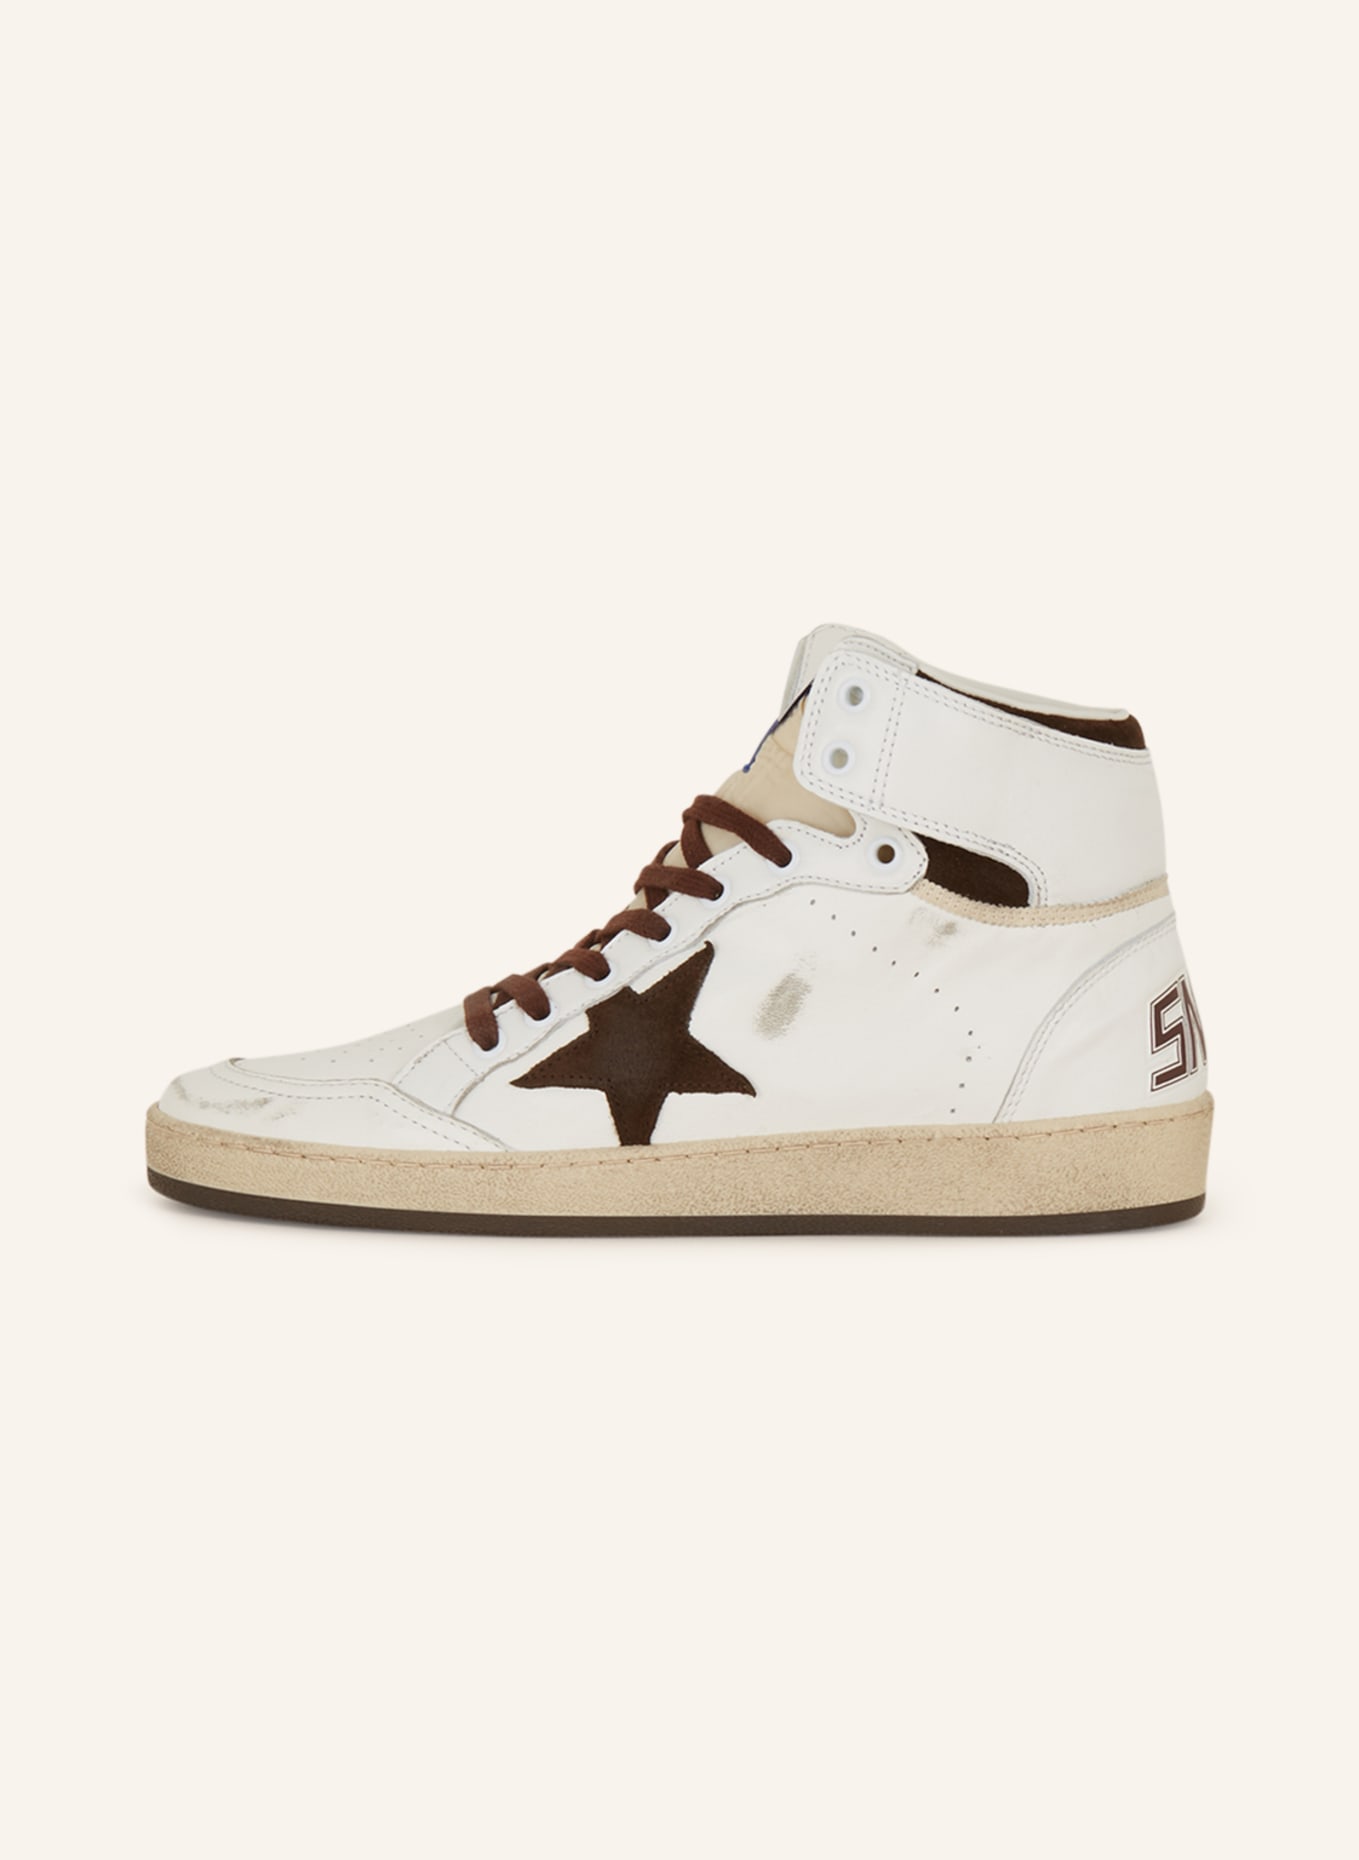 GOLDEN GOOSE Hightop-Sneaker SKY STAR, Farbe: WEISS/ DUNKELBRAUN (Bild 4)